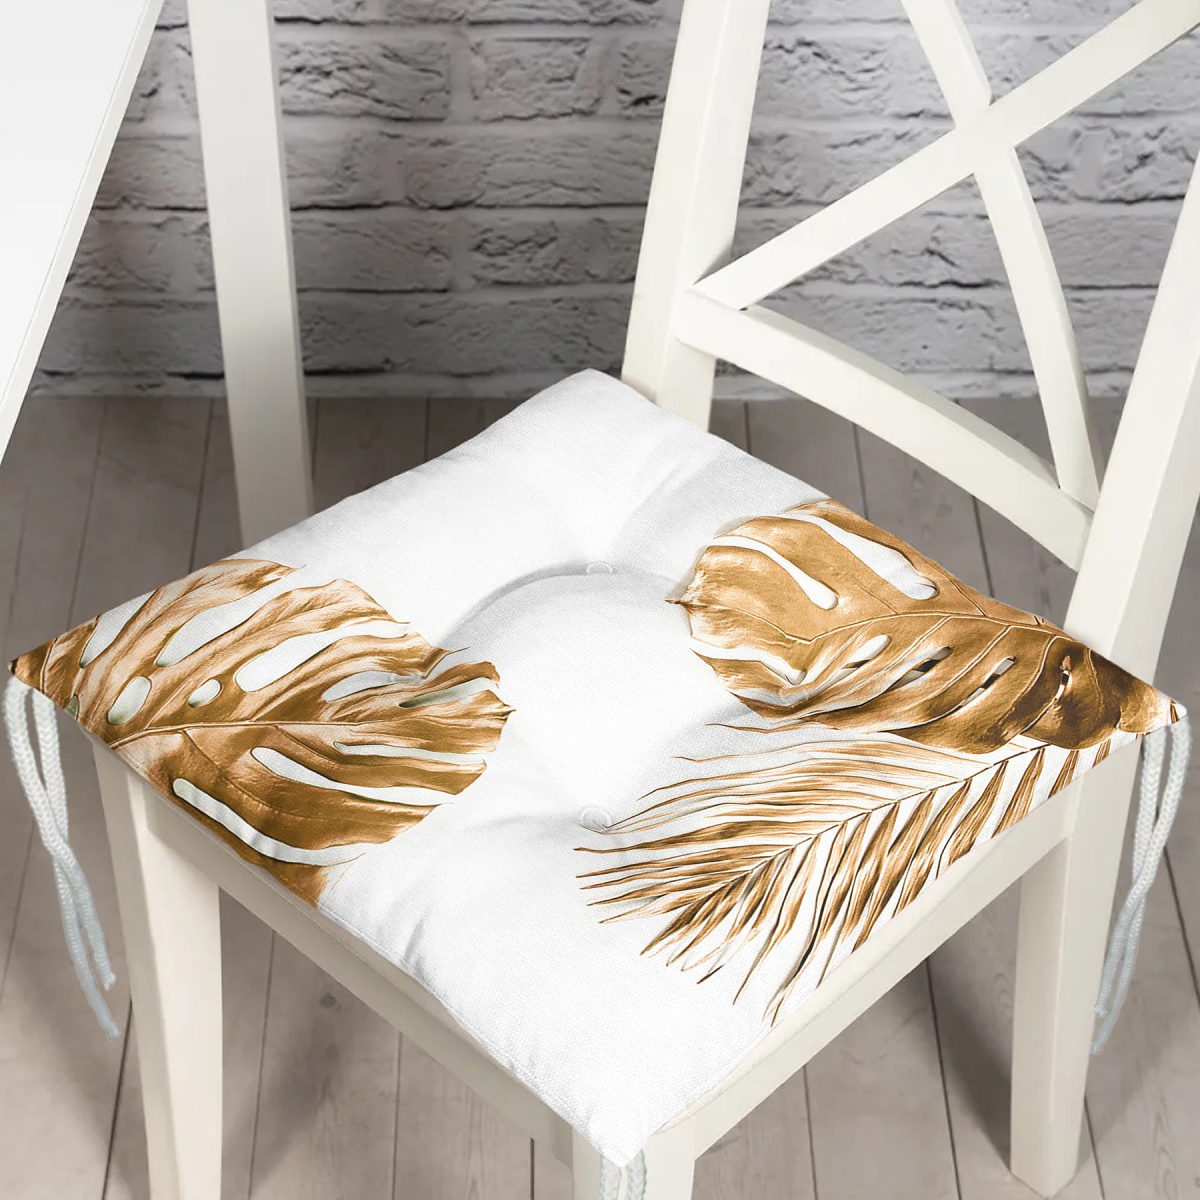 3D Altın Renkli Palmiye Yaprakları Desenli Dekoratif Pofuduk Sandalye Minderi Realhomes